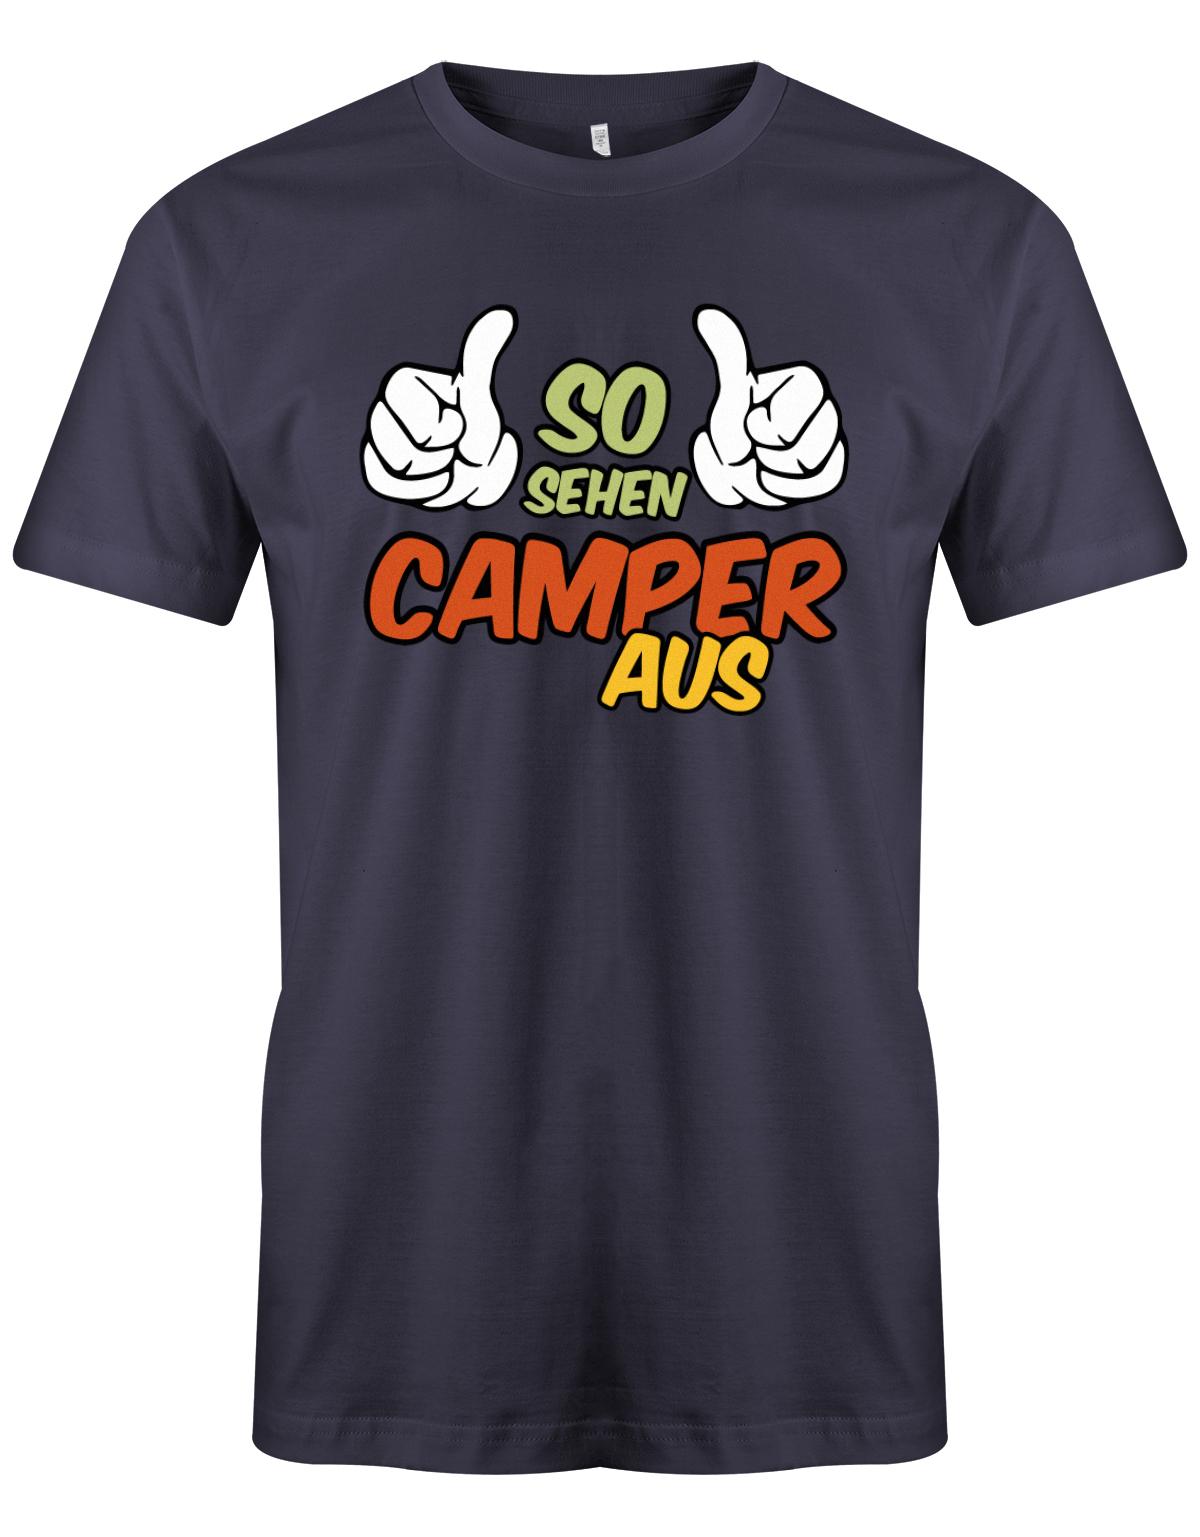 So-sehen-Camper-aus-Herren-Camping-Shirt-Navy